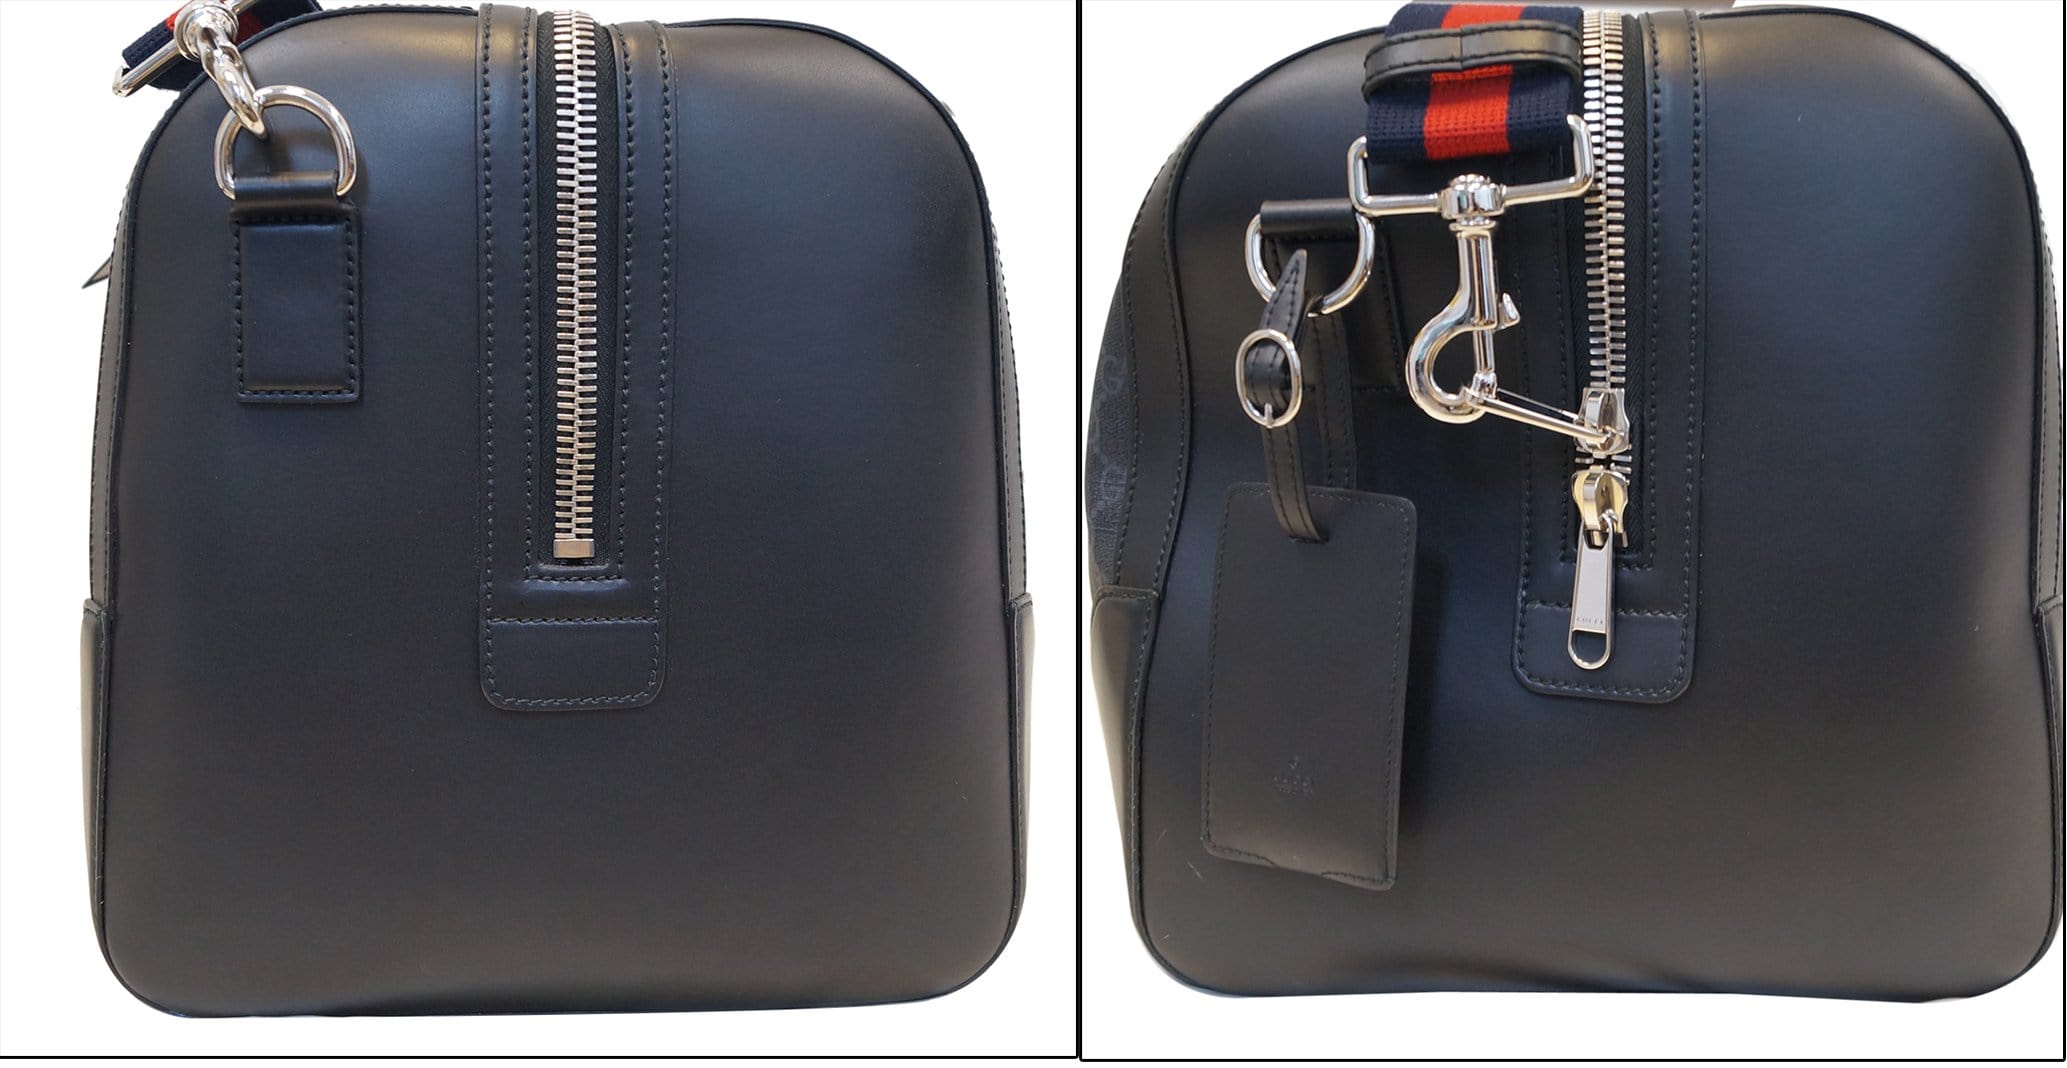 Travel bag Supreme Black in Plastic - 15468554